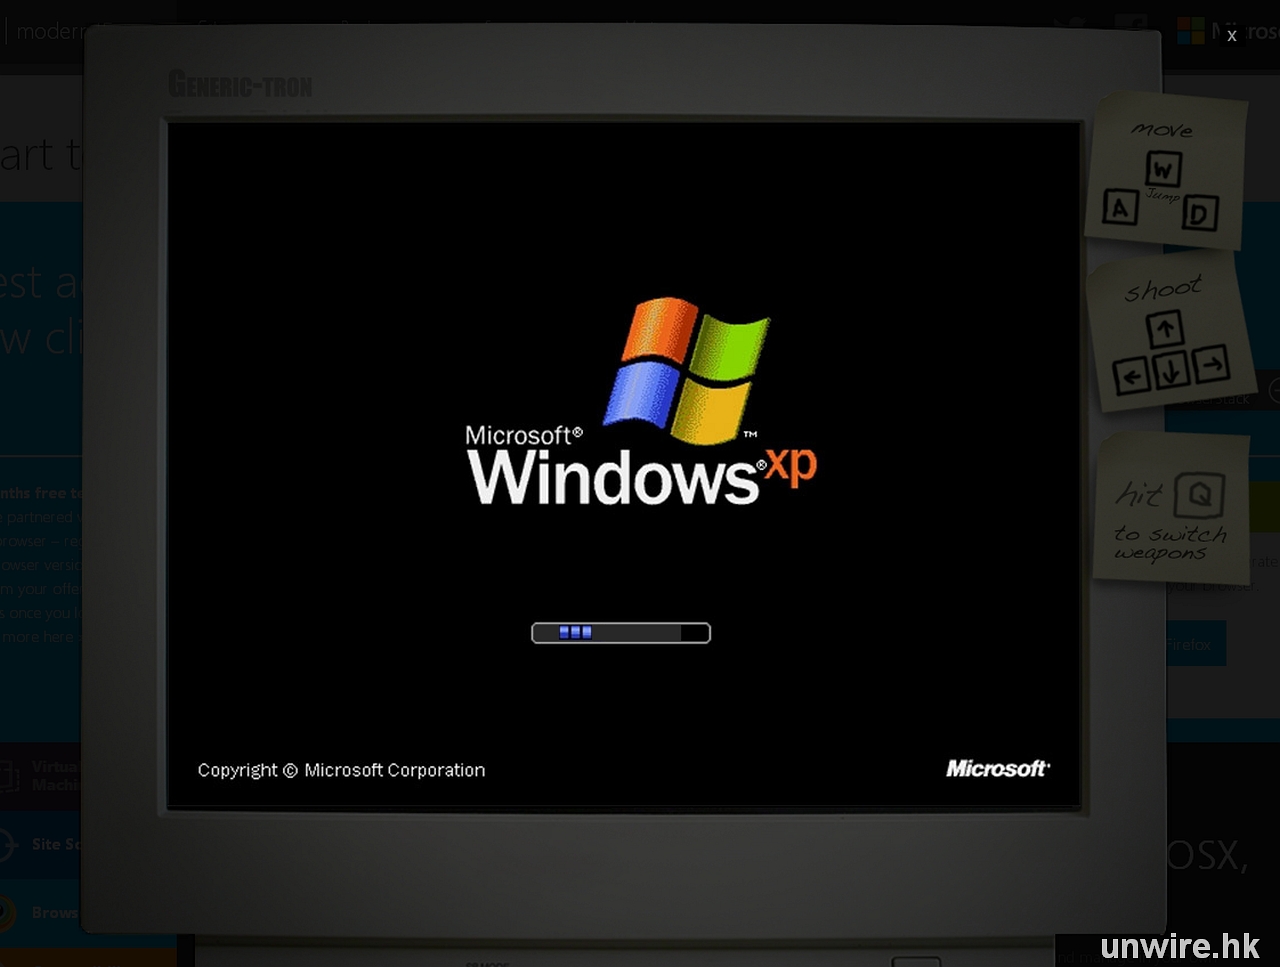 Включи для windows 7. Загрузка виндовс. Windows XP запуск. Загрузка виндовс XP. Запуск виндовс XP.